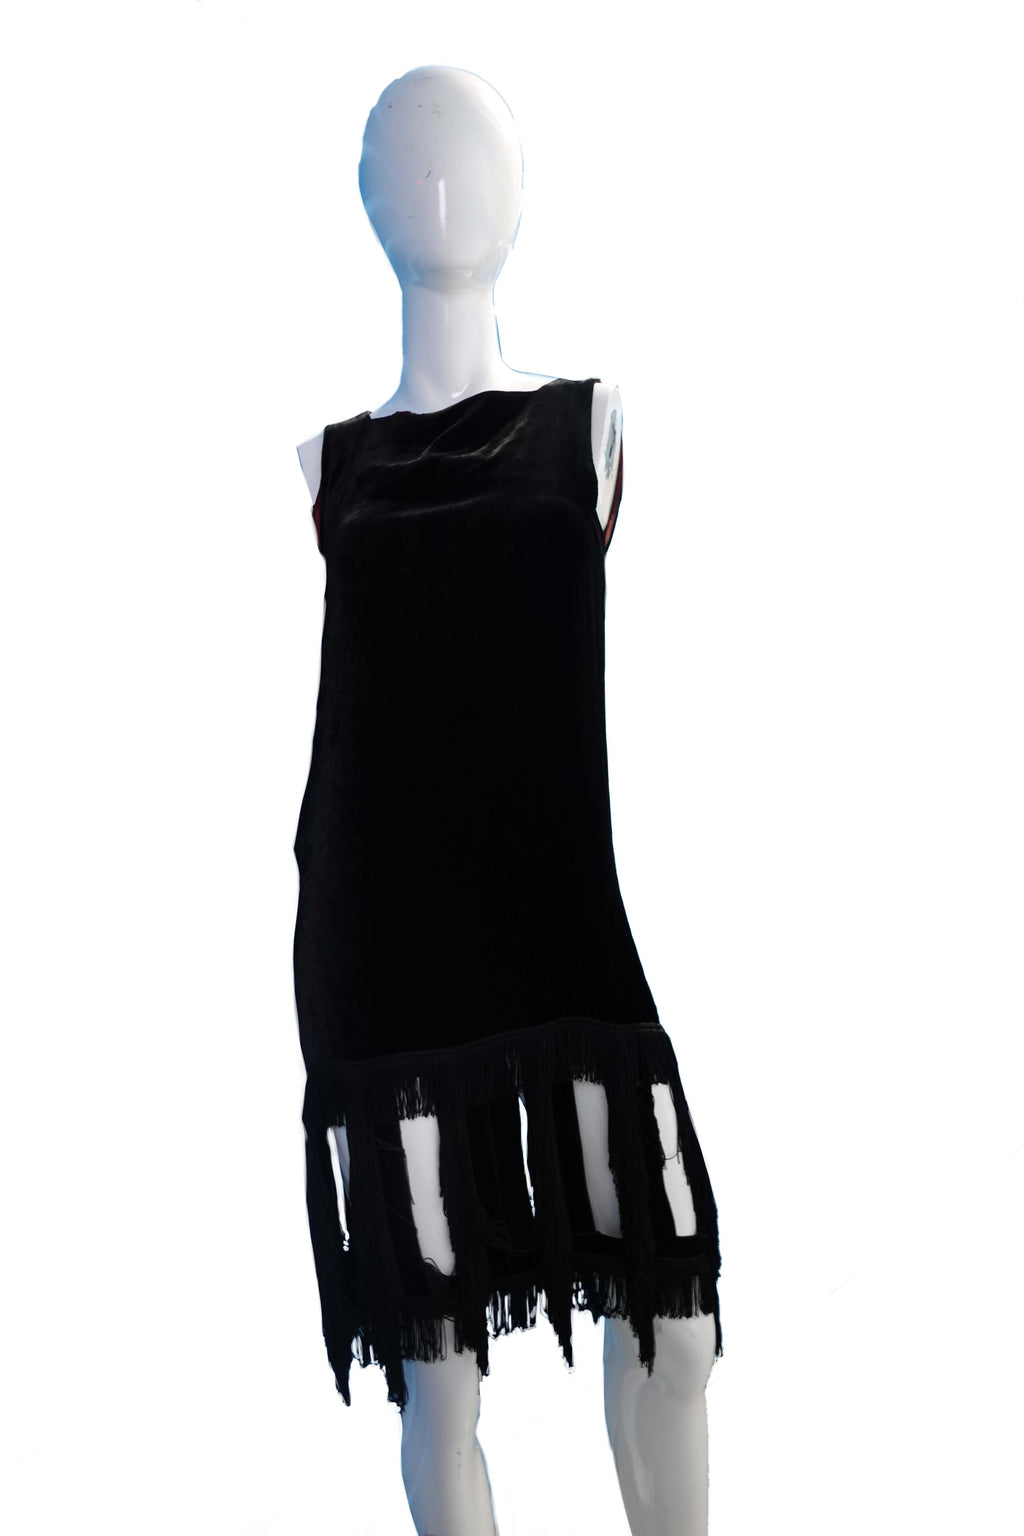 Jean Paul Gaultier 1997 Black Velvet Drapes Dress